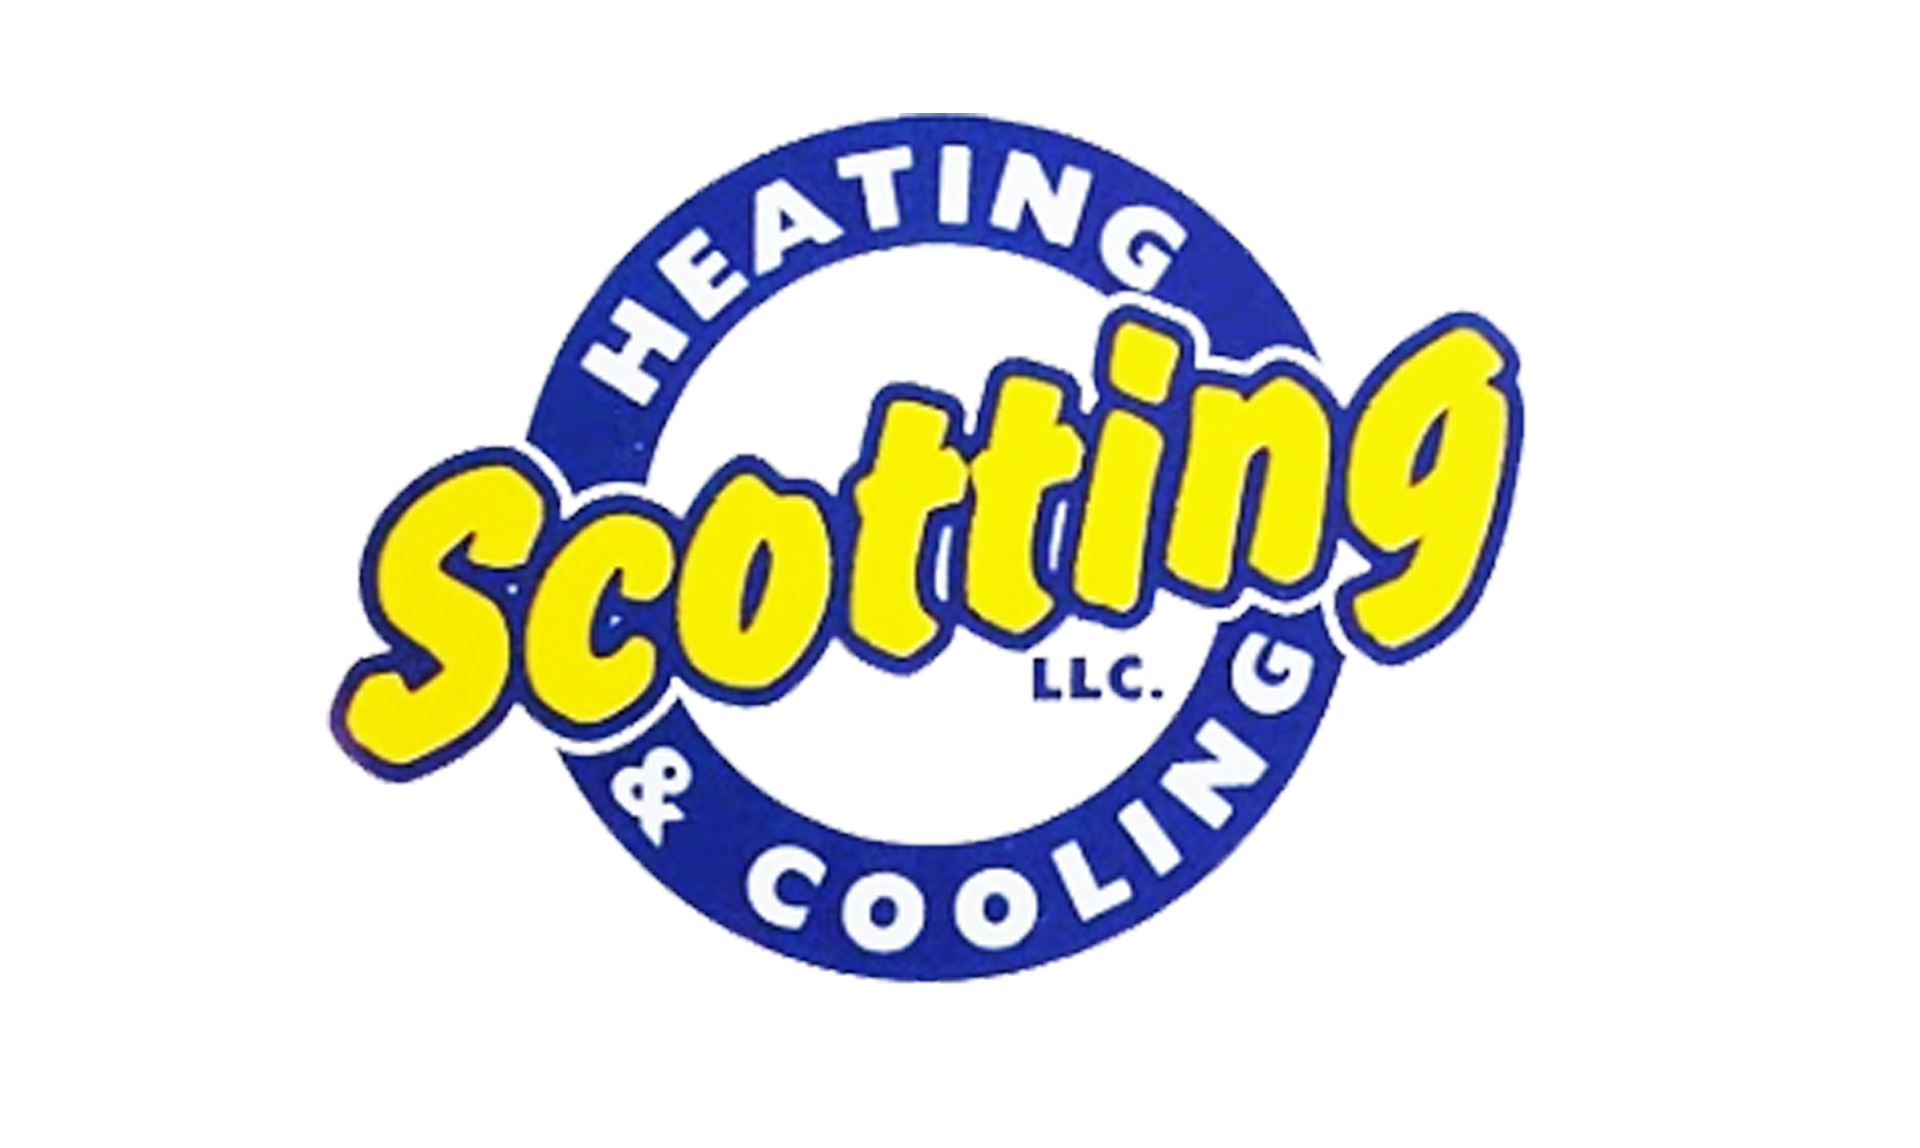 Scotting Heating & Cooling LLC